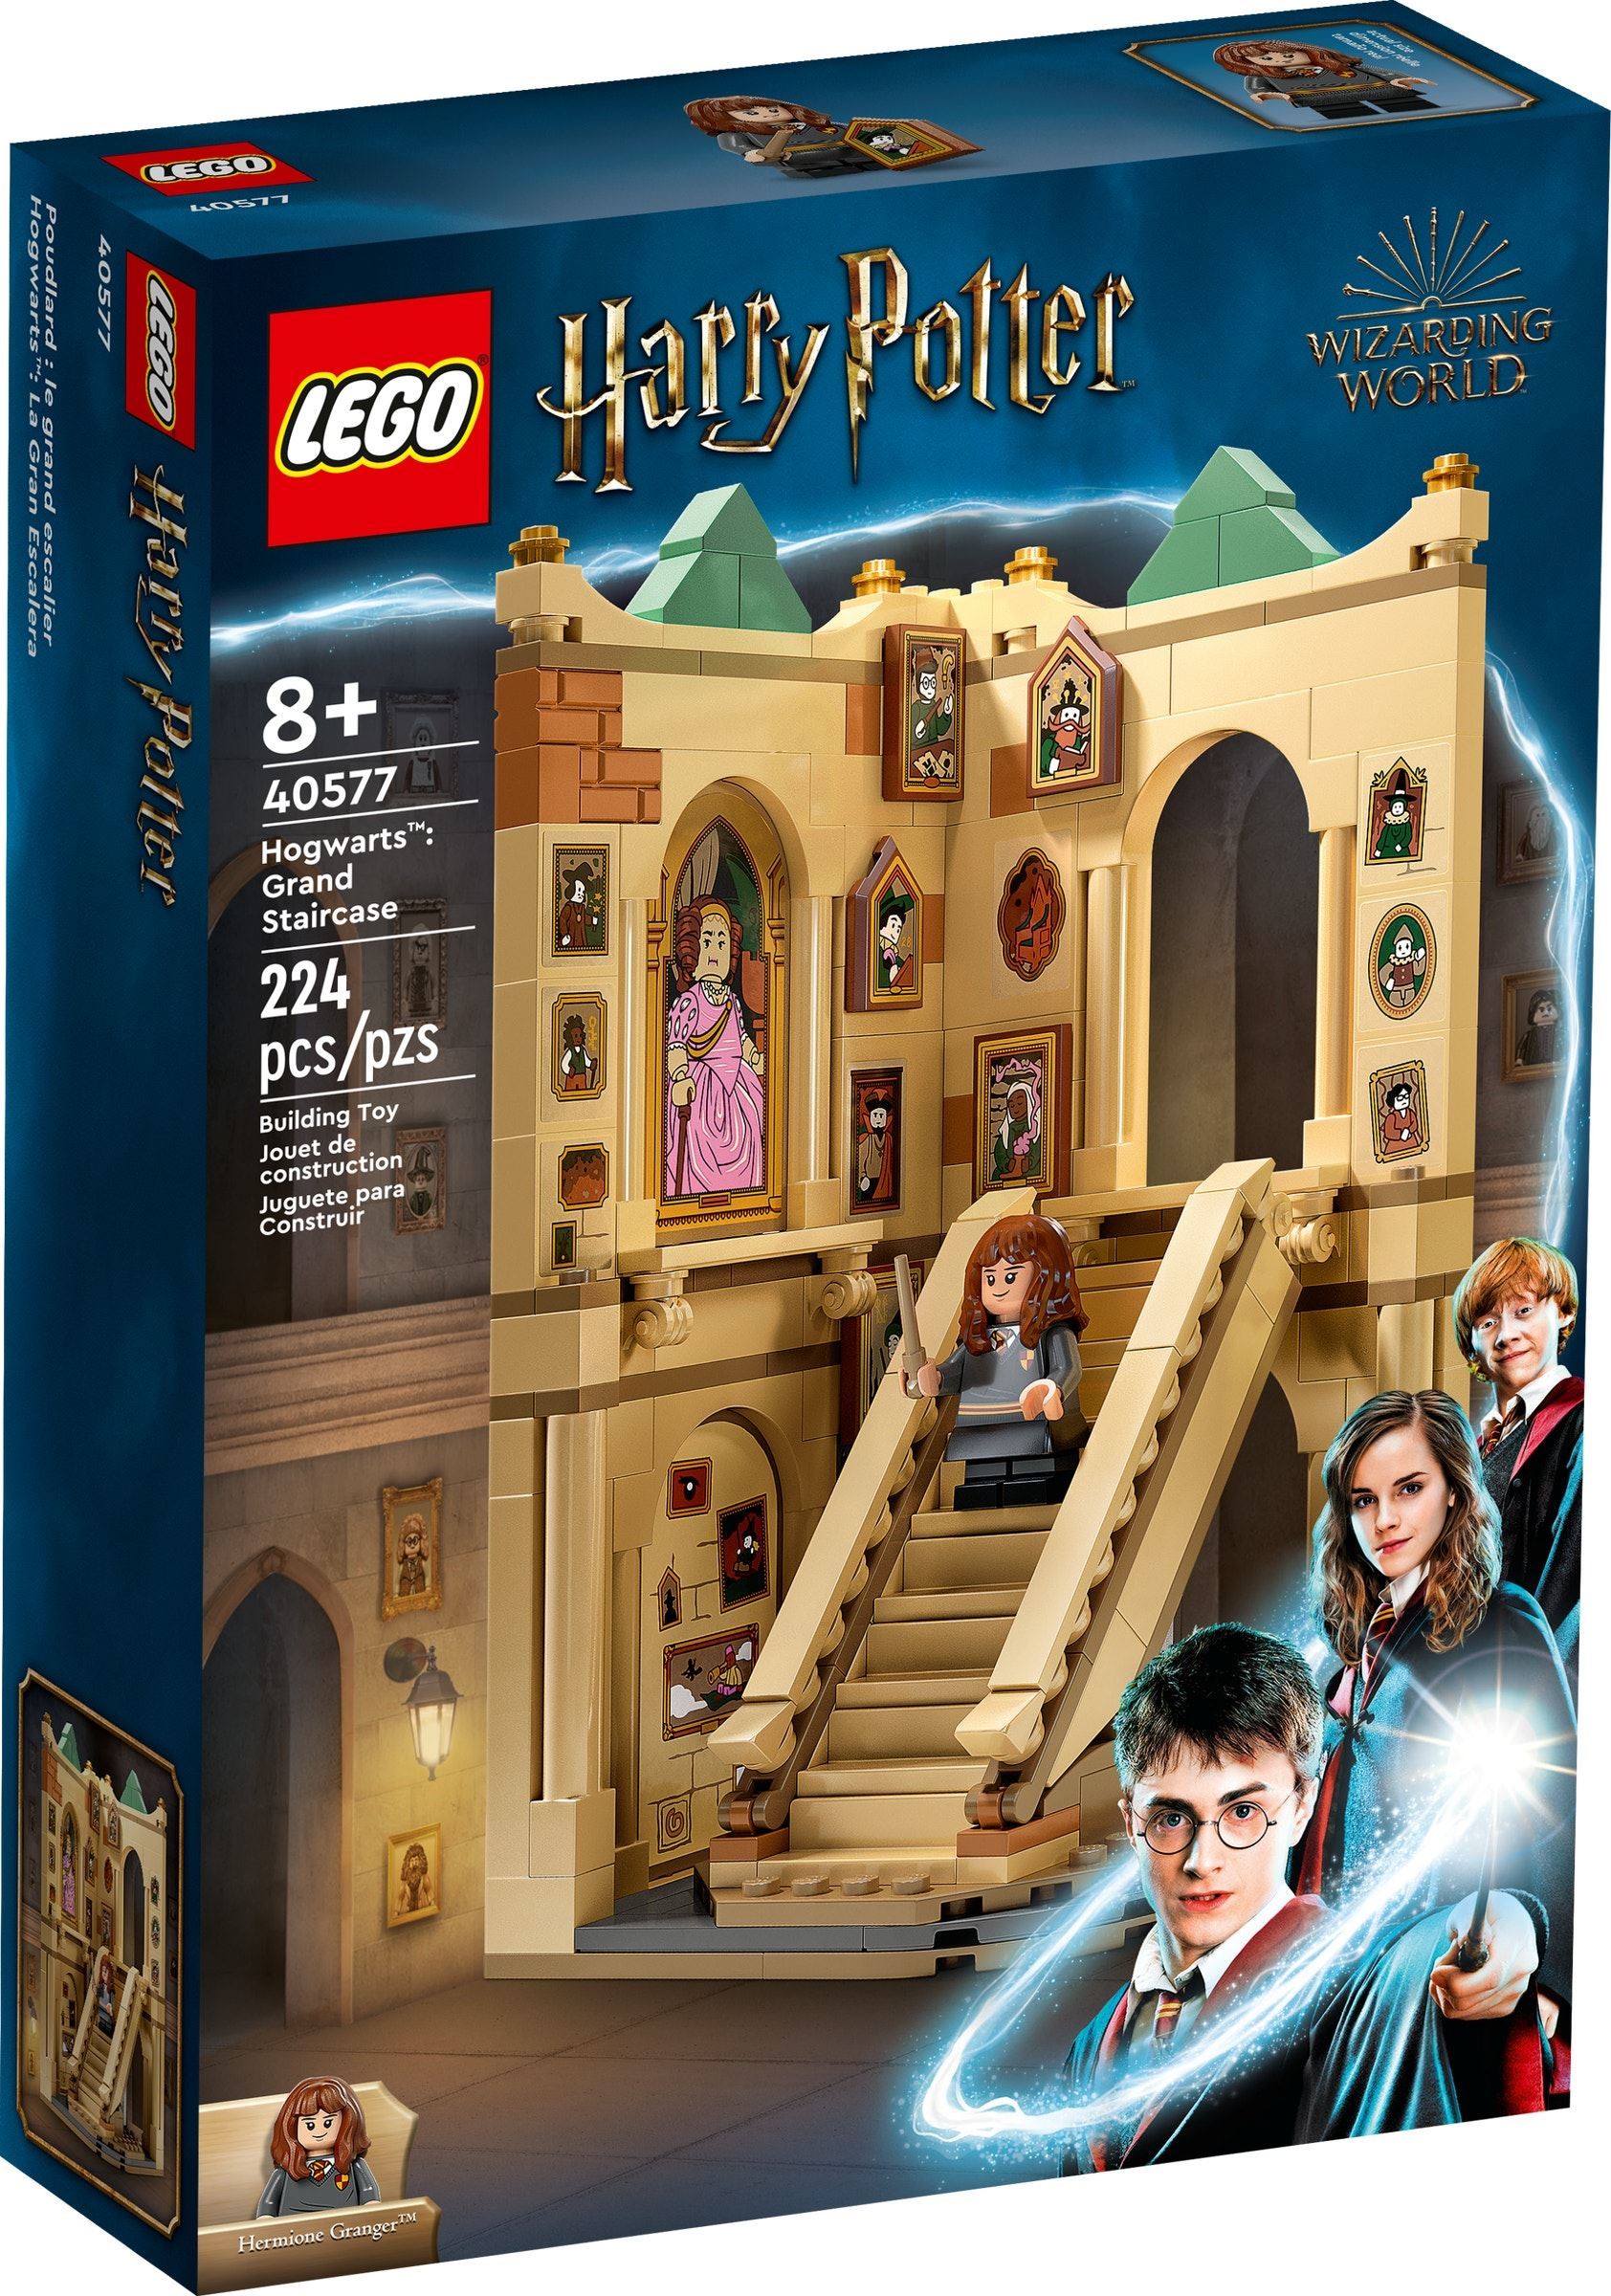 Harry Potter : encore un nouveau LEGO Poudlard ! Seulement, celui